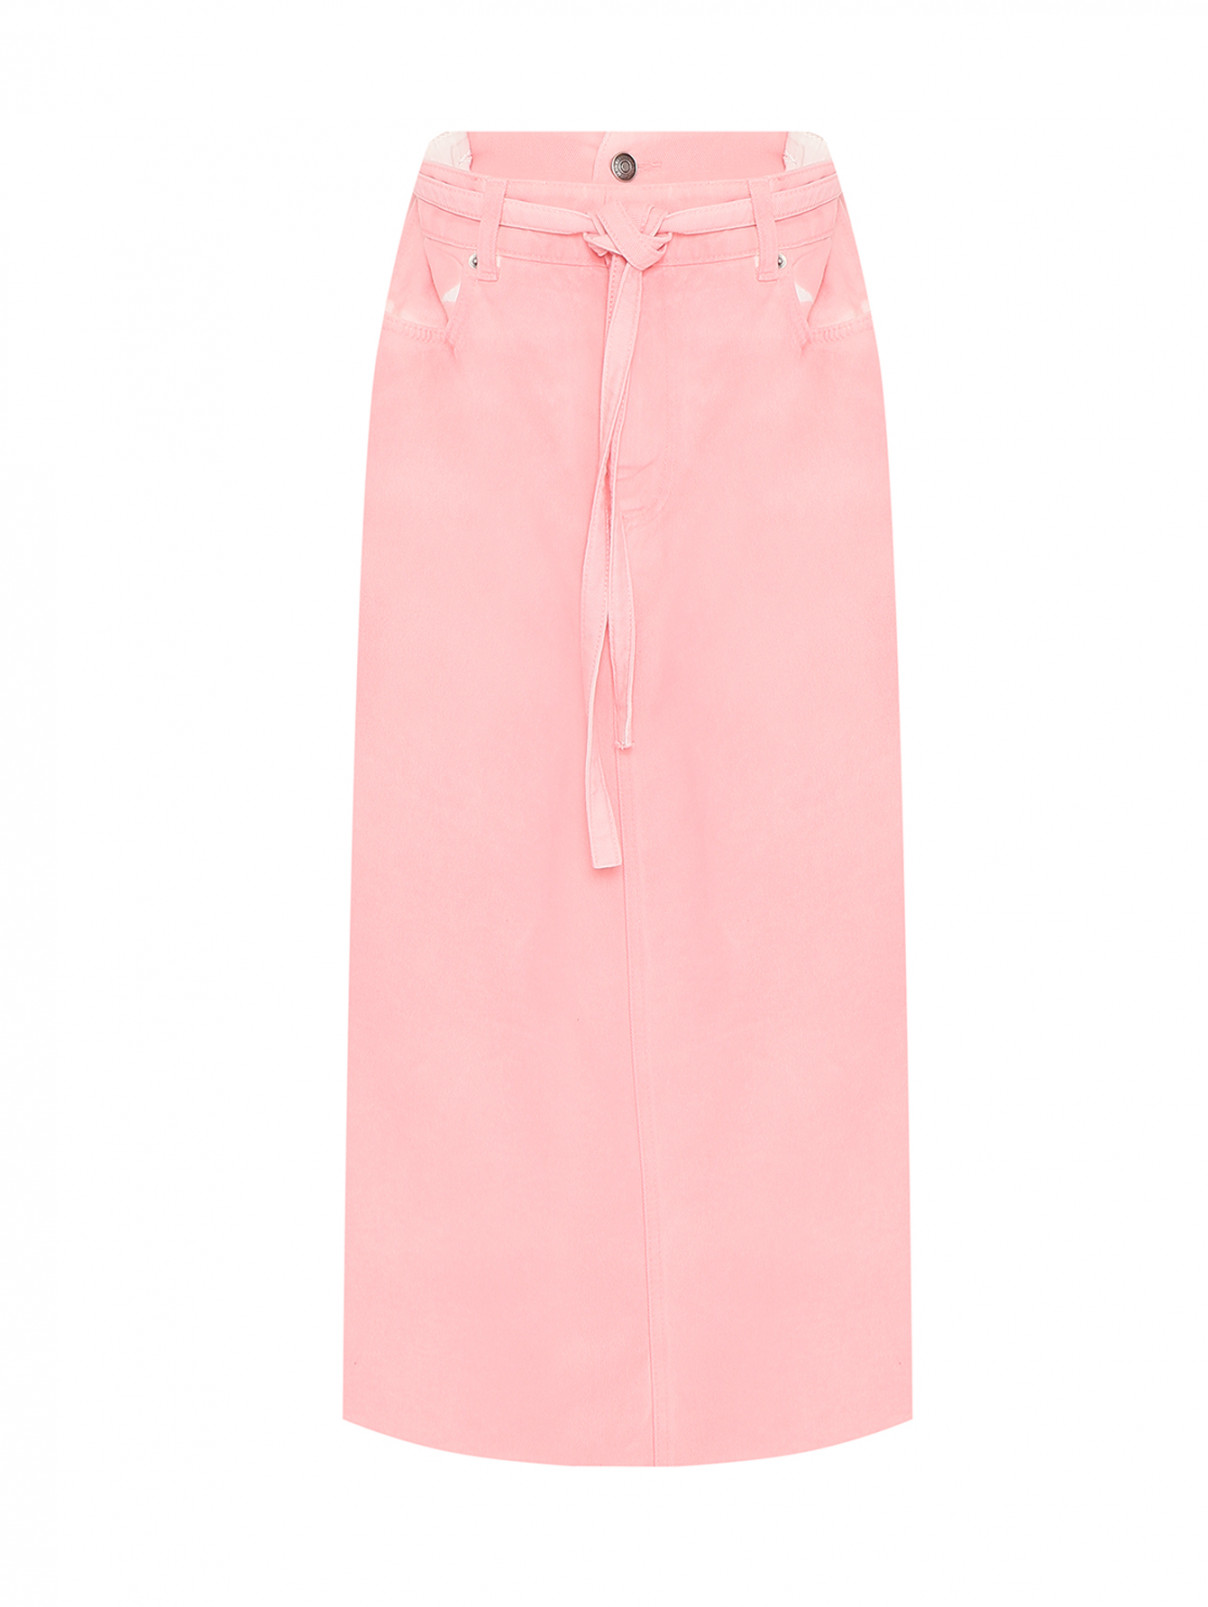 Джинсовая юбка-миди с карманами Sportmax  –  Общий вид  – Цвет:  Розовый